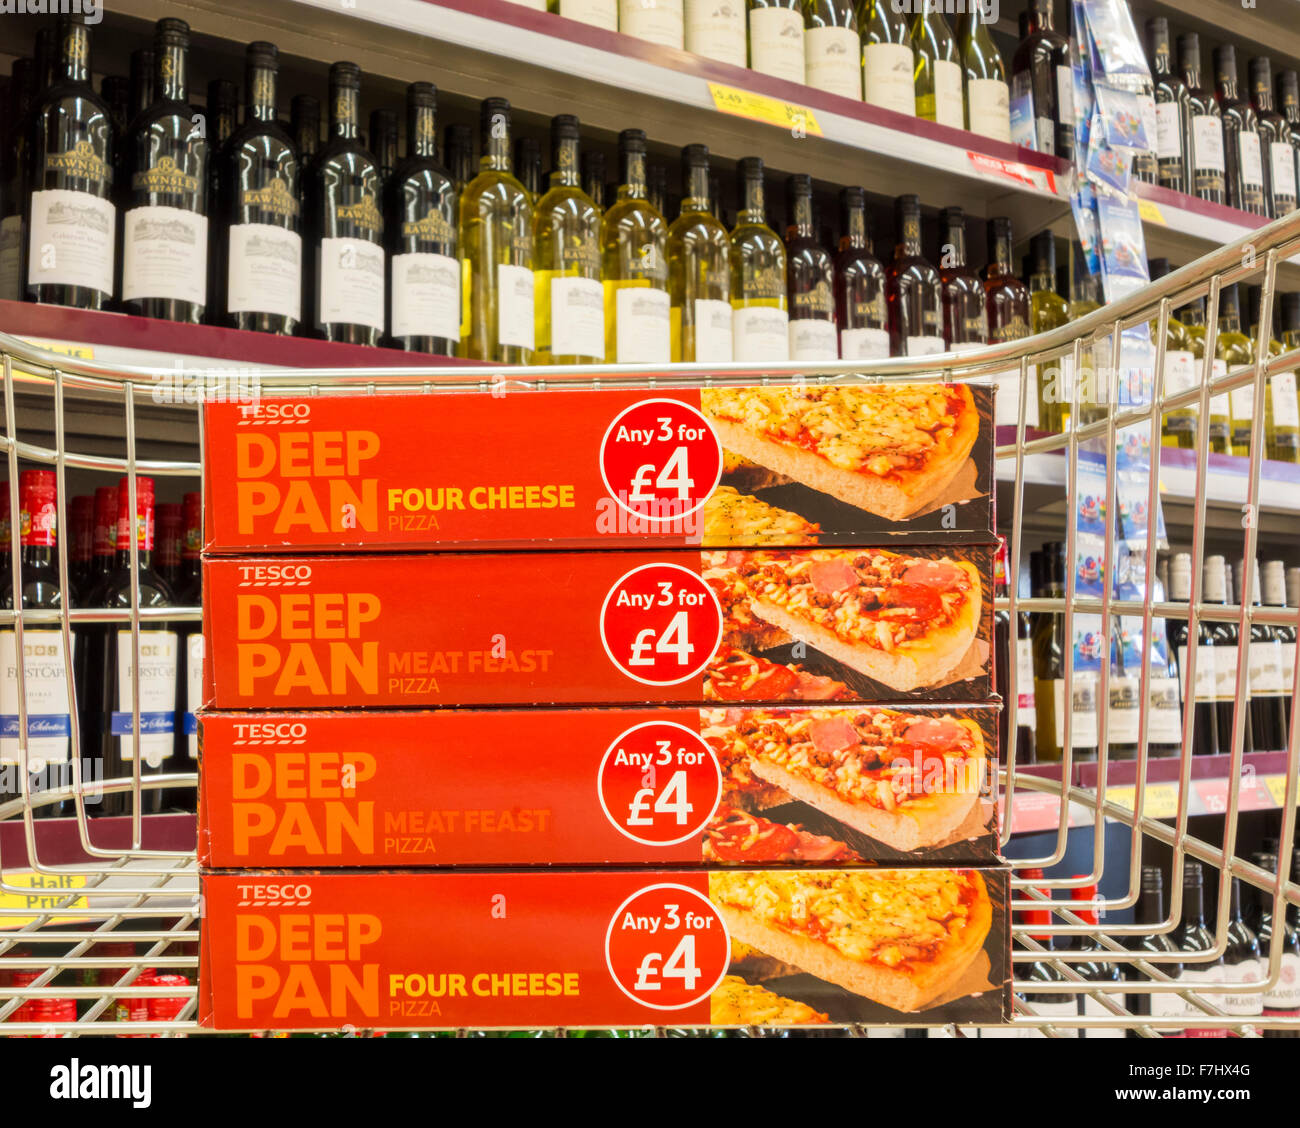 Quatre pizzas surgelées Tesco Deep Pan dans un chariot avec vin en arrière-plan. Concept d'alimentation saine/malsaine... Magasin Tesco, Royaume-Uni Banque D'Images